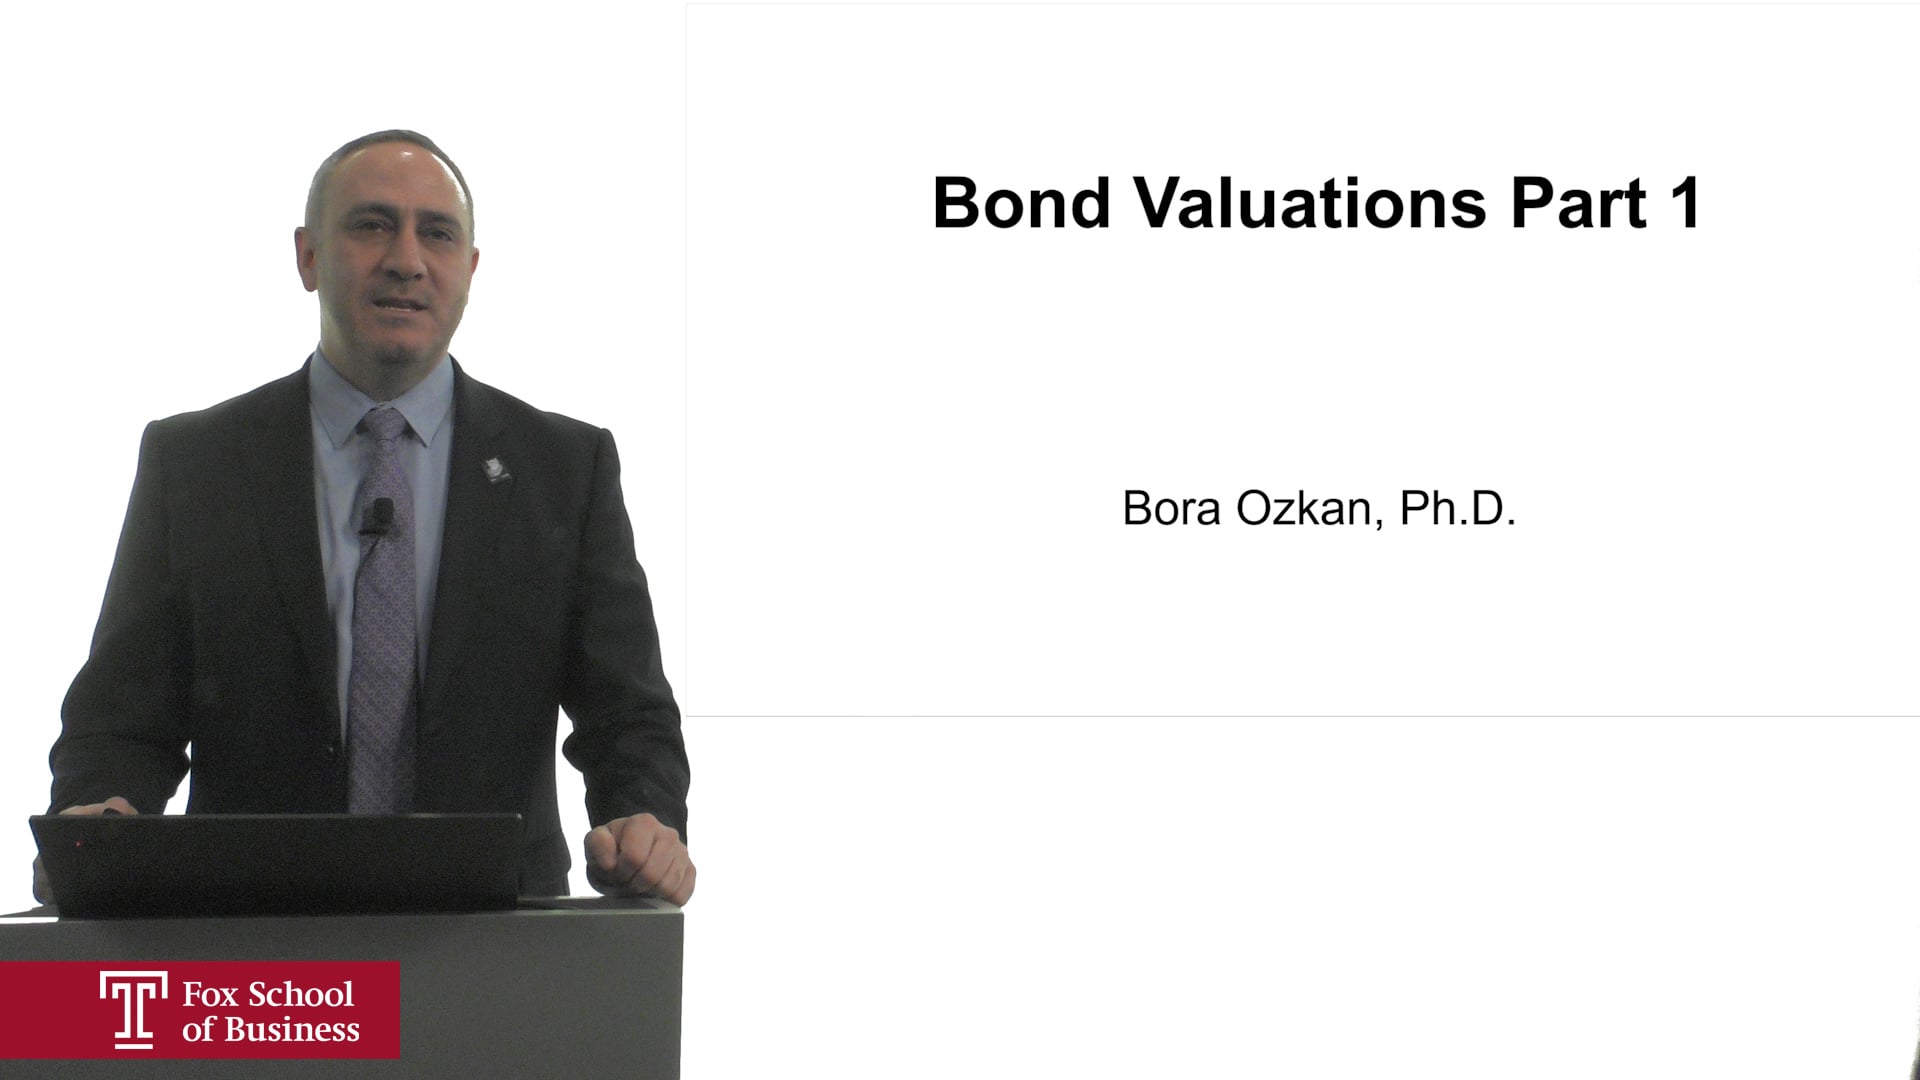 Bond Valuations Part 1